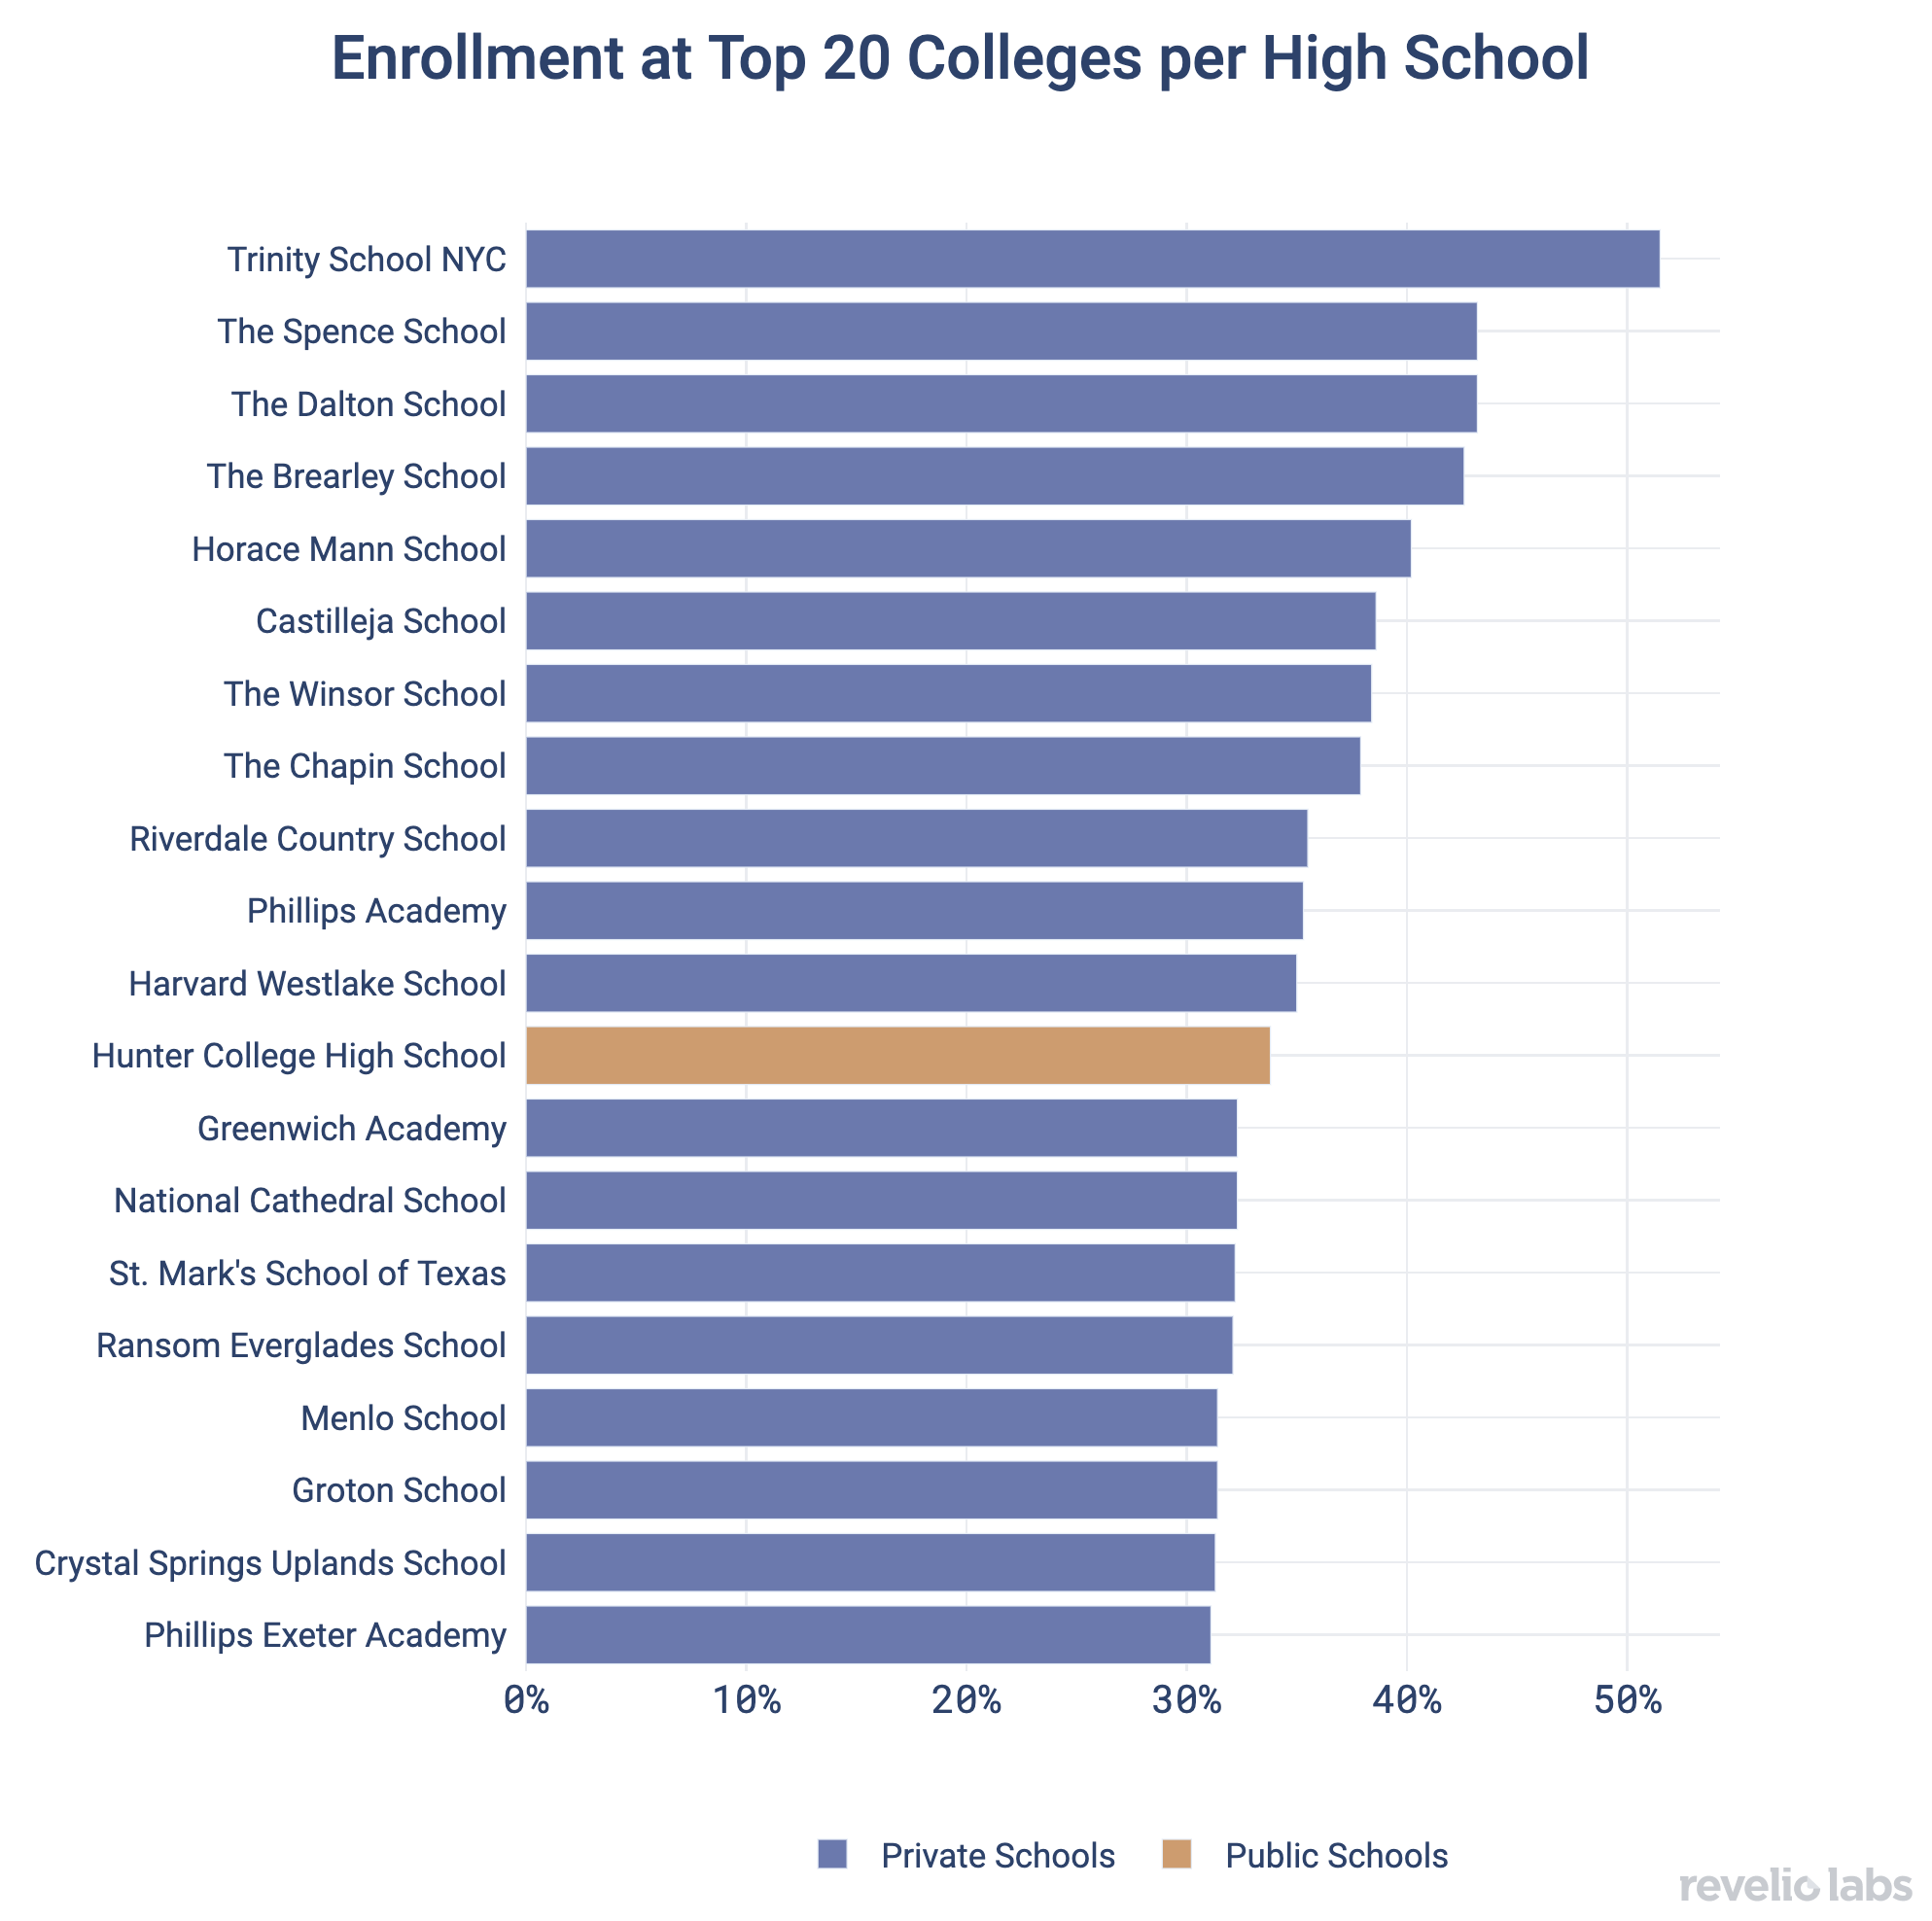 Enrollment at Top 20 Colleges per High School